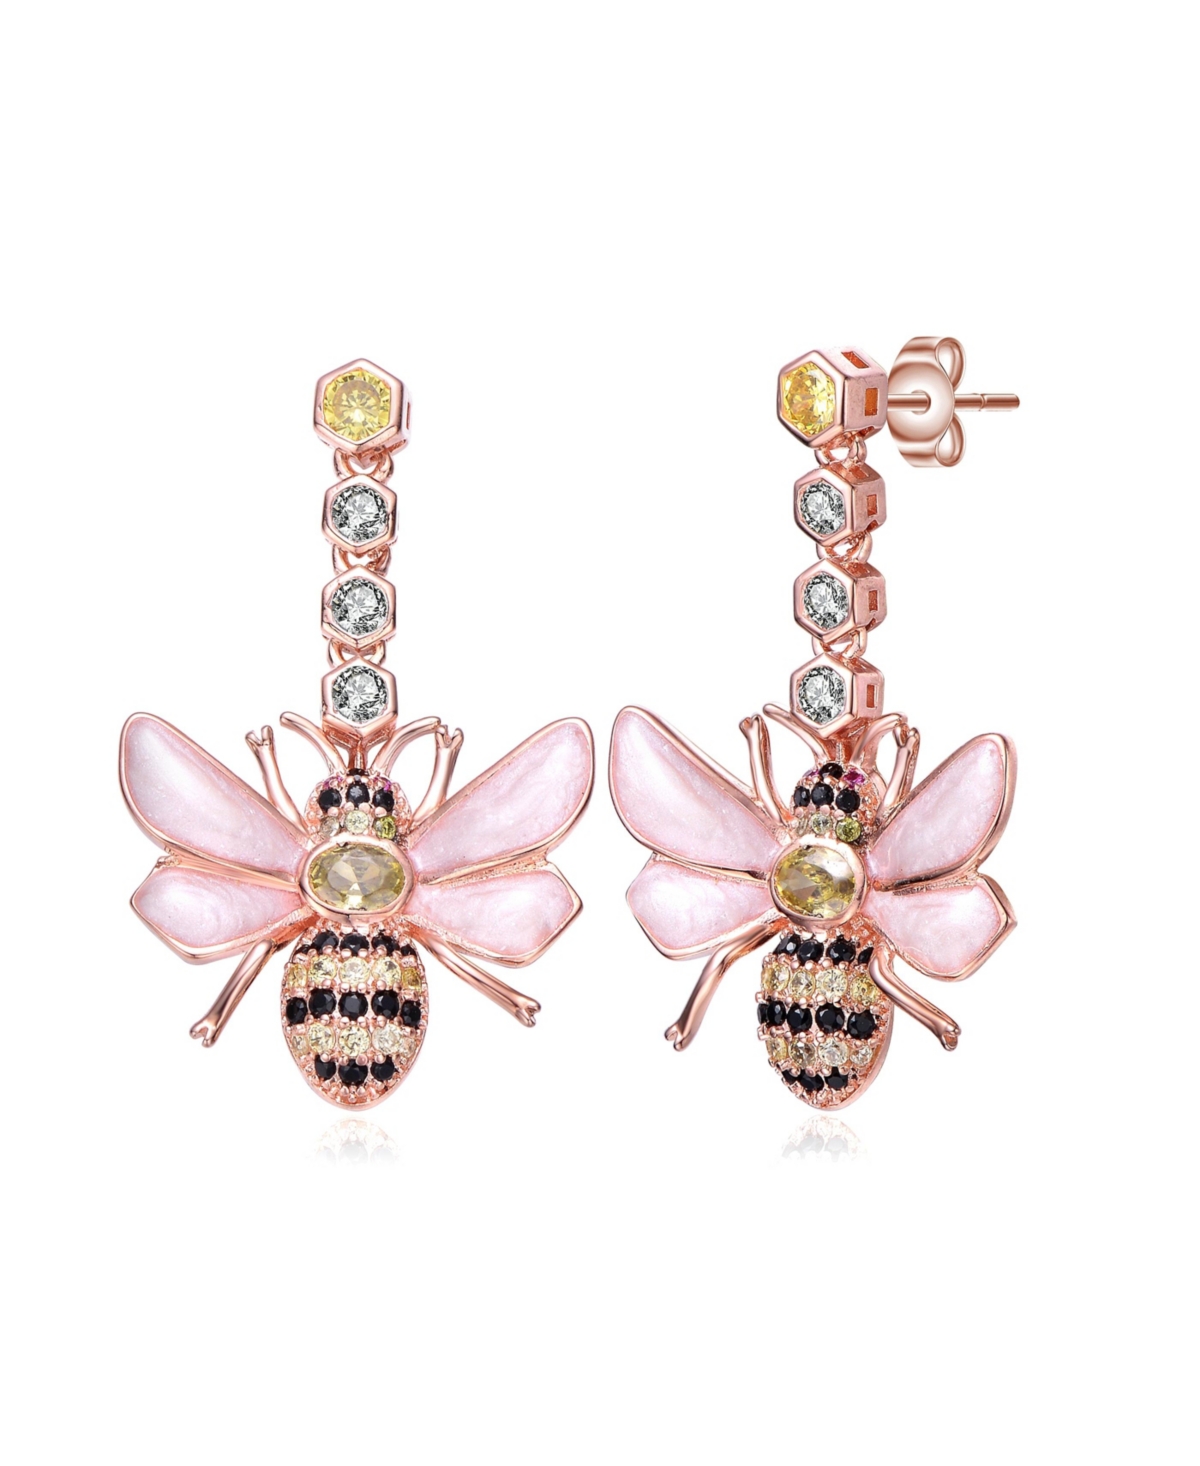 Gnoce Butterfly Dangle Earring Sterling Silver Rose Gold Guff Earrings with  Cubic Zirconia Fashion Drop Earrings Jewelry Gift for Women Girls